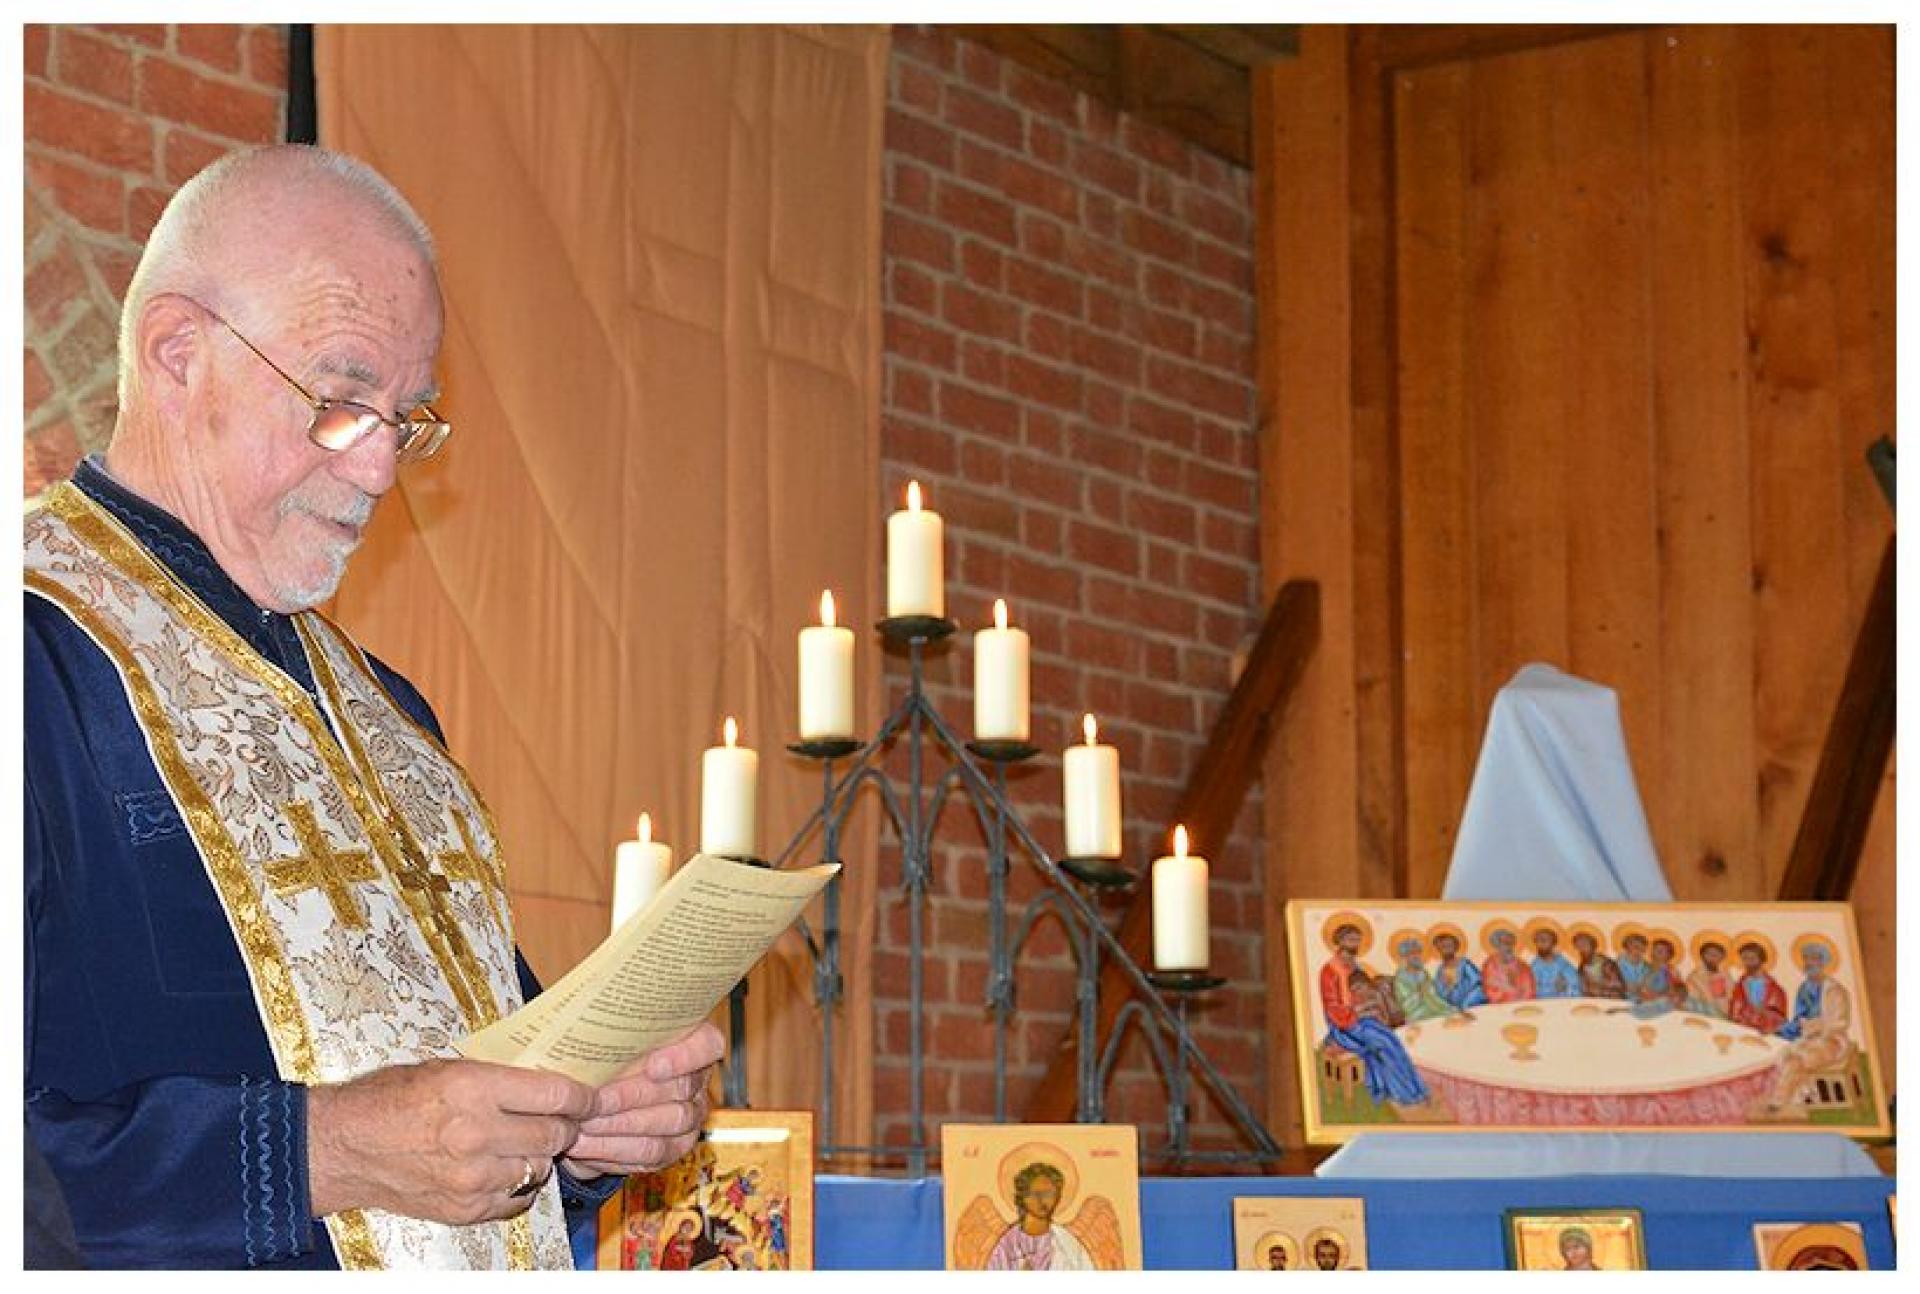 Vijftig iconen gewijd door priester Brenninkmeijer 